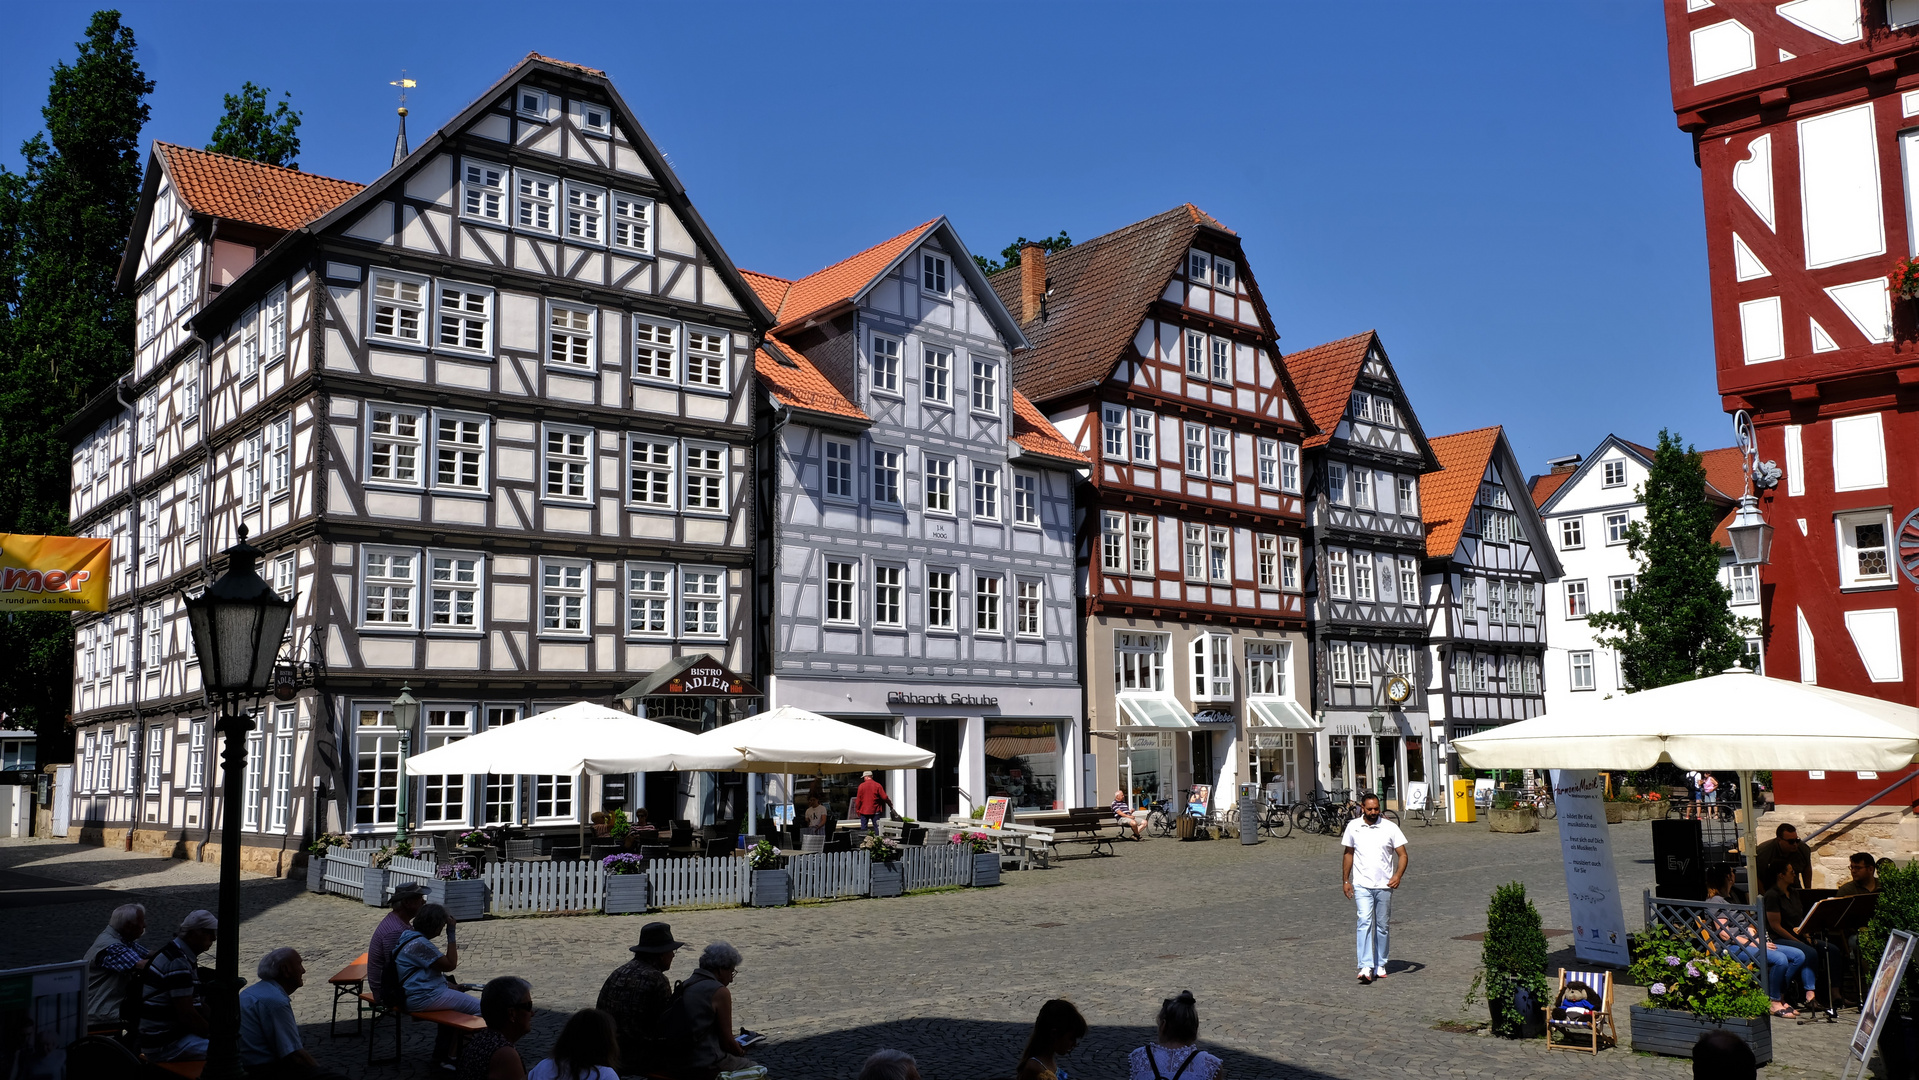 Altstadt und Marktplatz Melsungen